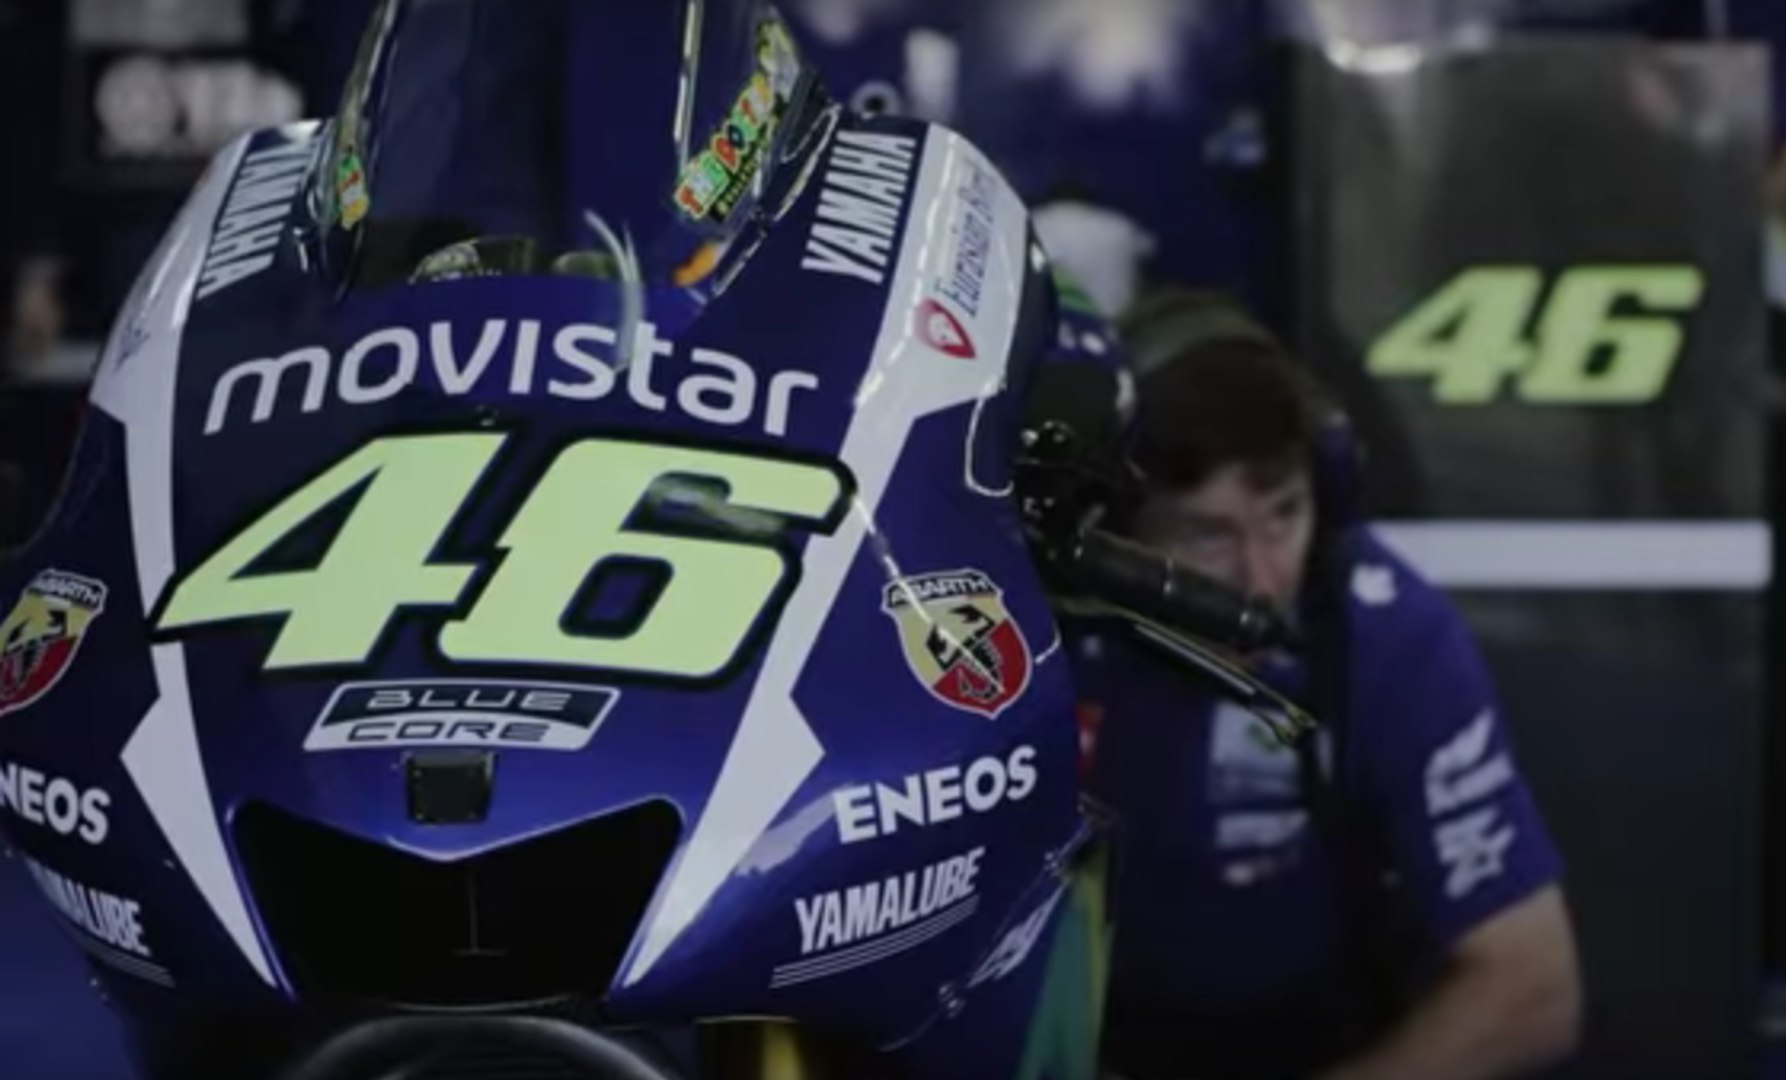 Resumen de la temporada de MotoGP 2015: guerra en la pista